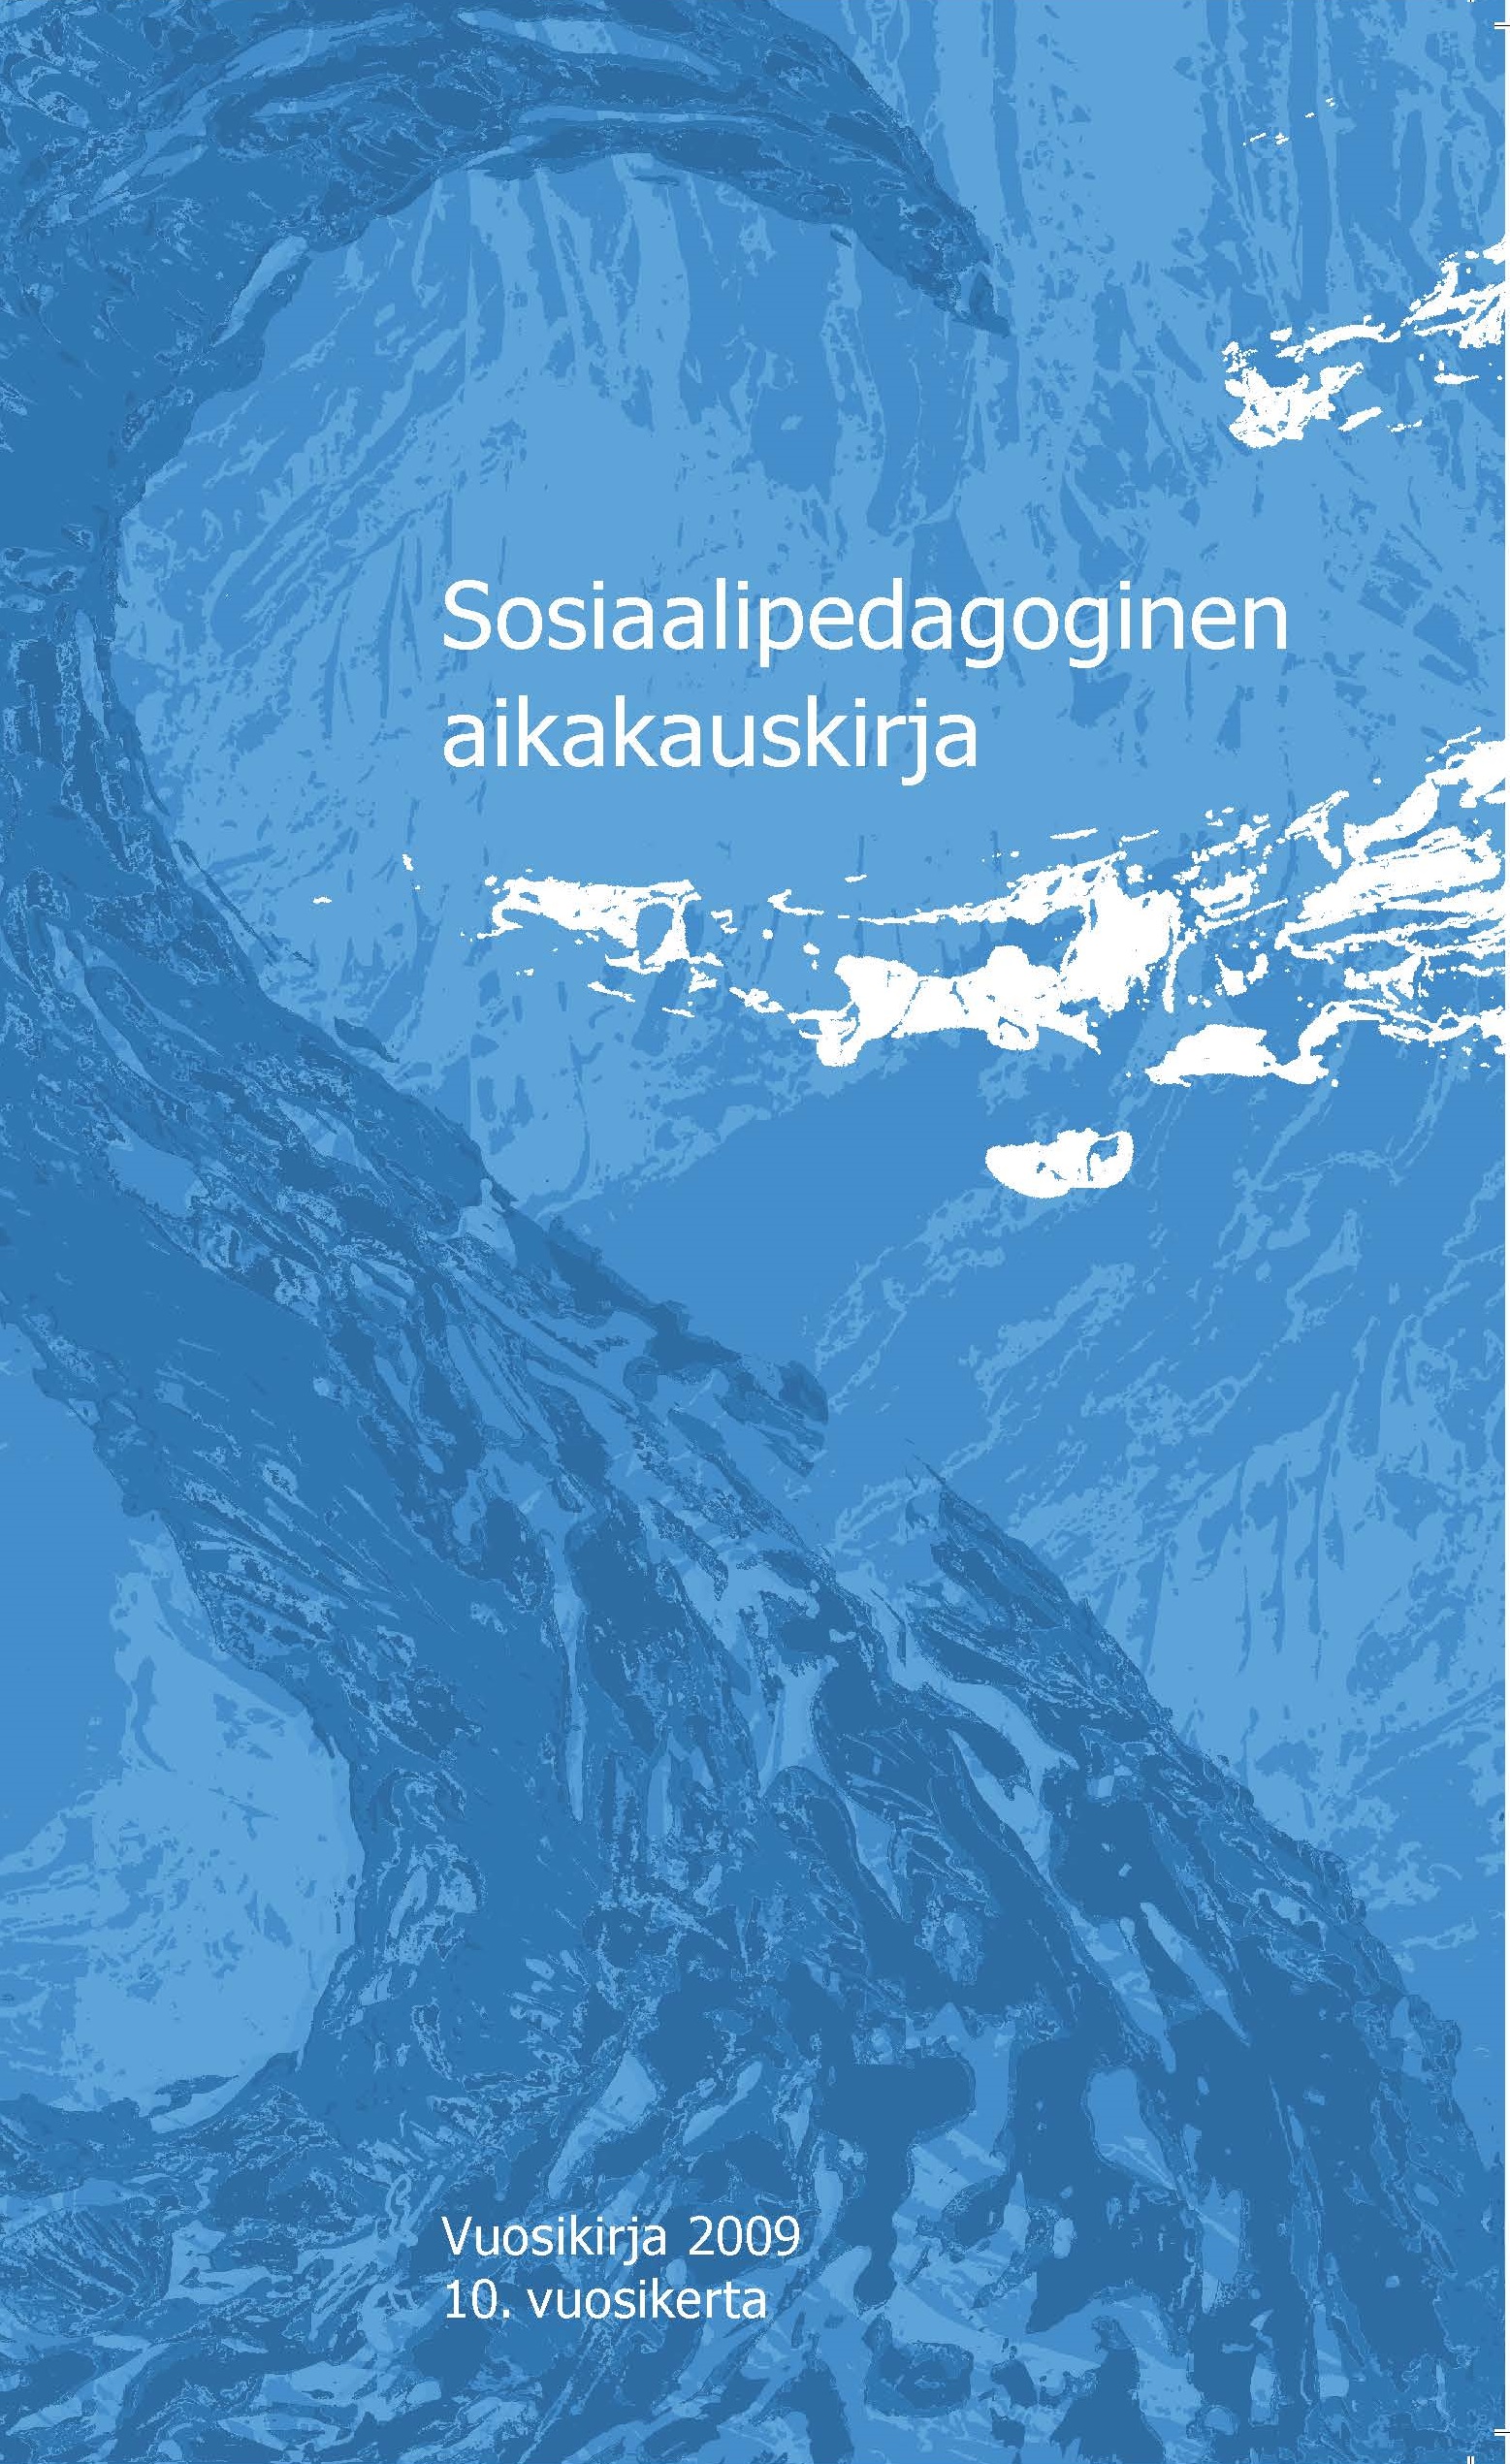 					Näytä Vol 10 (2009): Sosiaalipedagoginen aikakauskirja, vuosikirja 2009
				